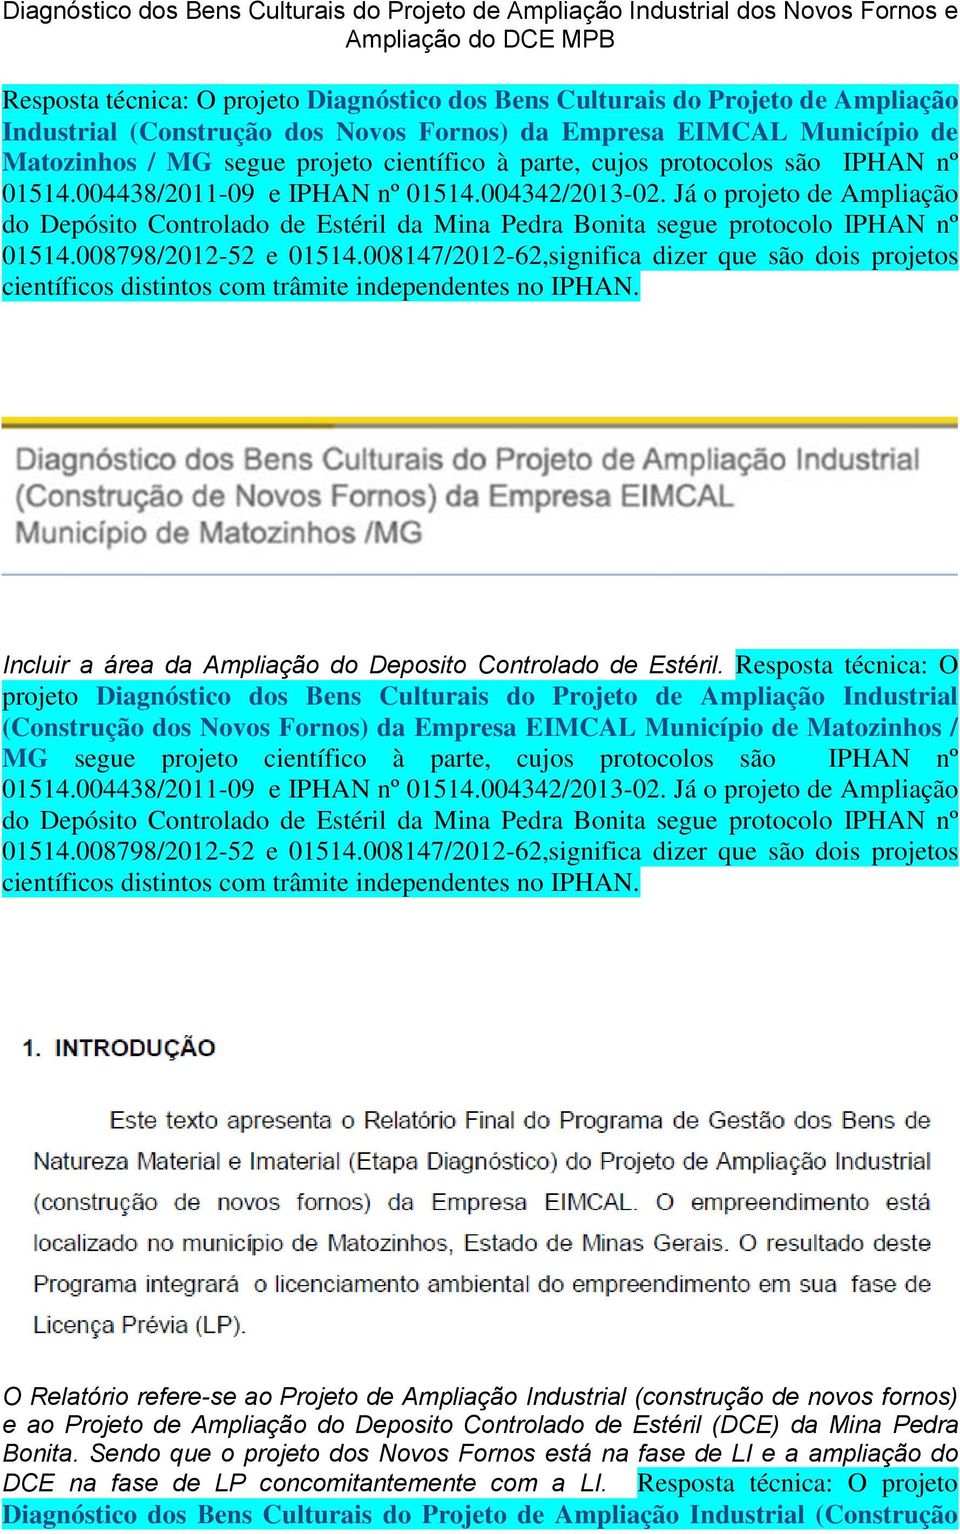 Projeto de Ampliação do Deposito Controlado de Estéril (DCE) da Mina Pedra Bonita.